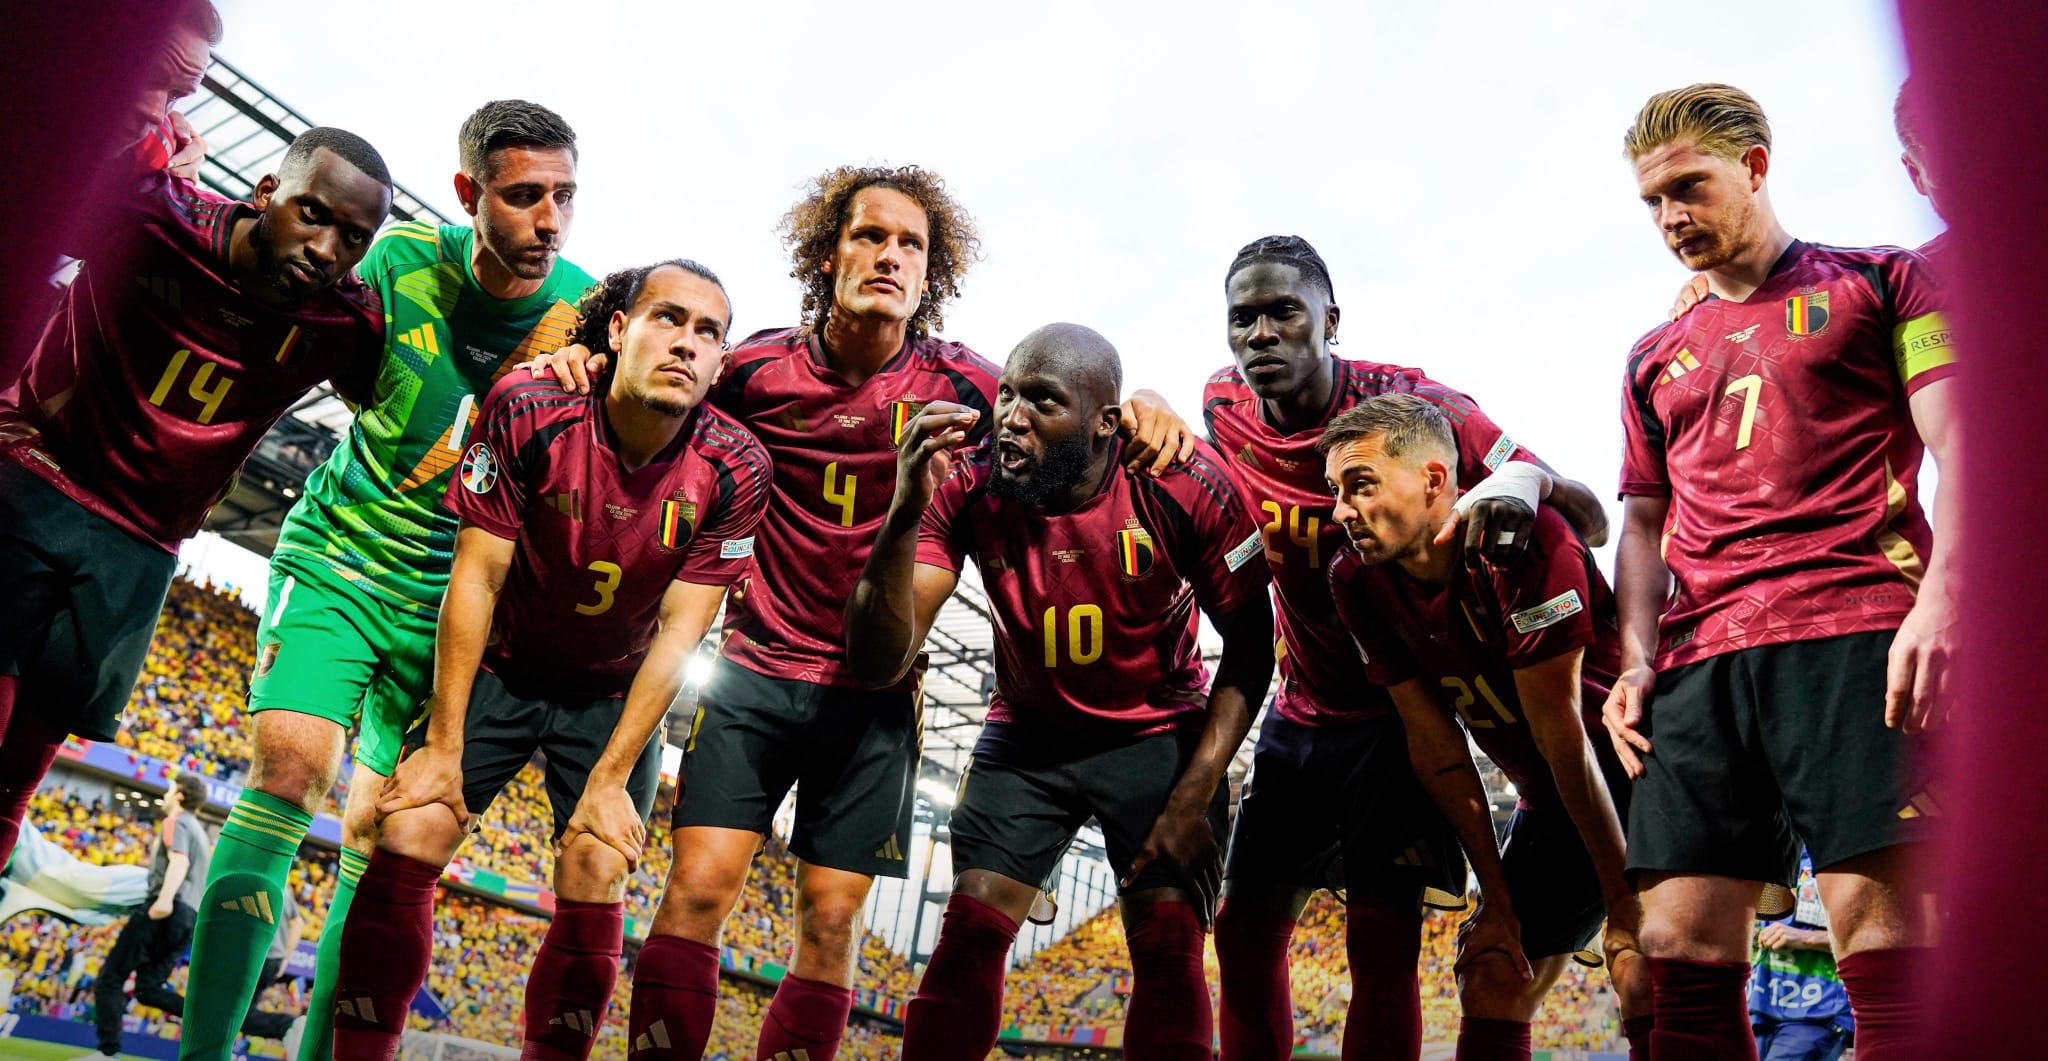 Piña de los jugadores de Bélgica antes del partido de la Eurocopa frente a Rumanía   Foto: Selección belga